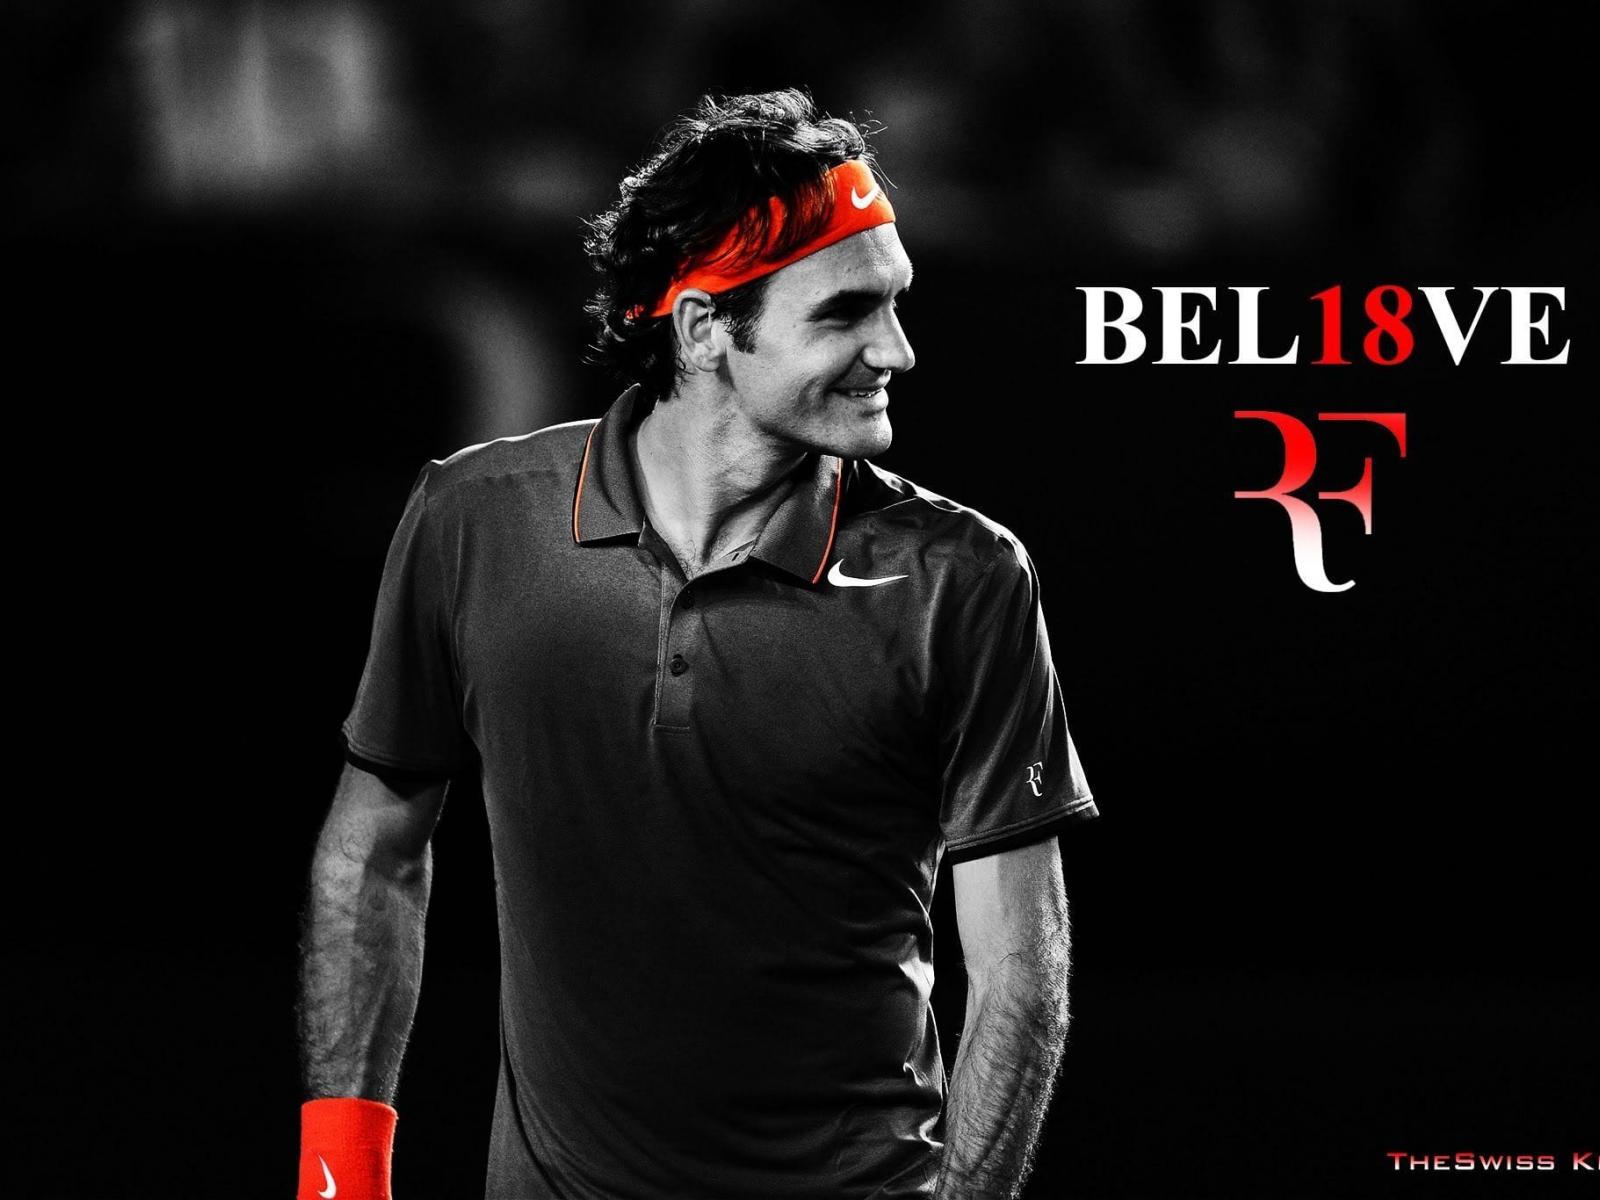 Roger Federer Wallpaper X